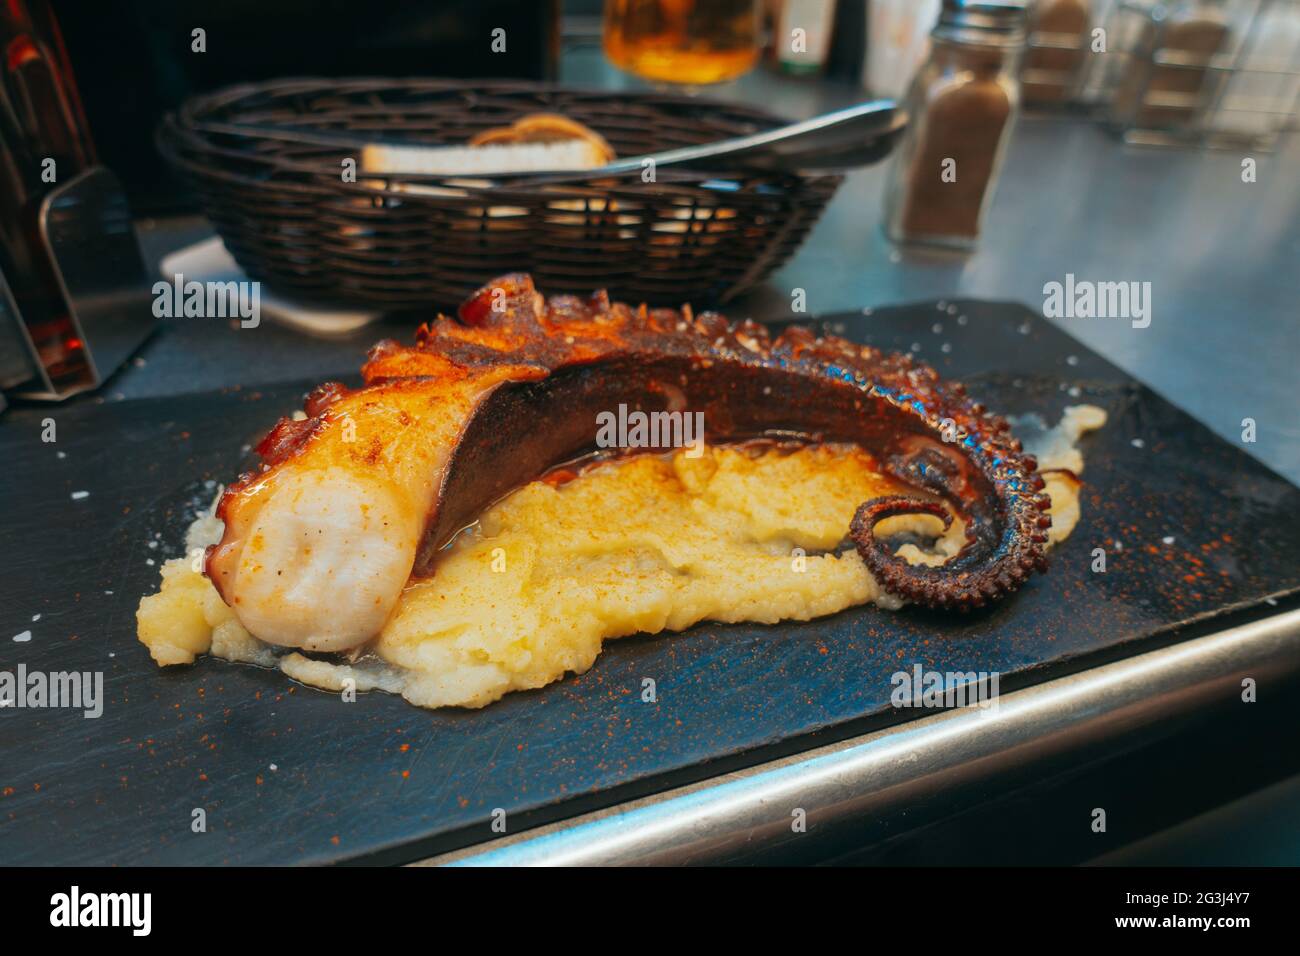 A fried octopus tentacle served at Mercado Central de Atarazanas, Málaga, Spain Stock Photo